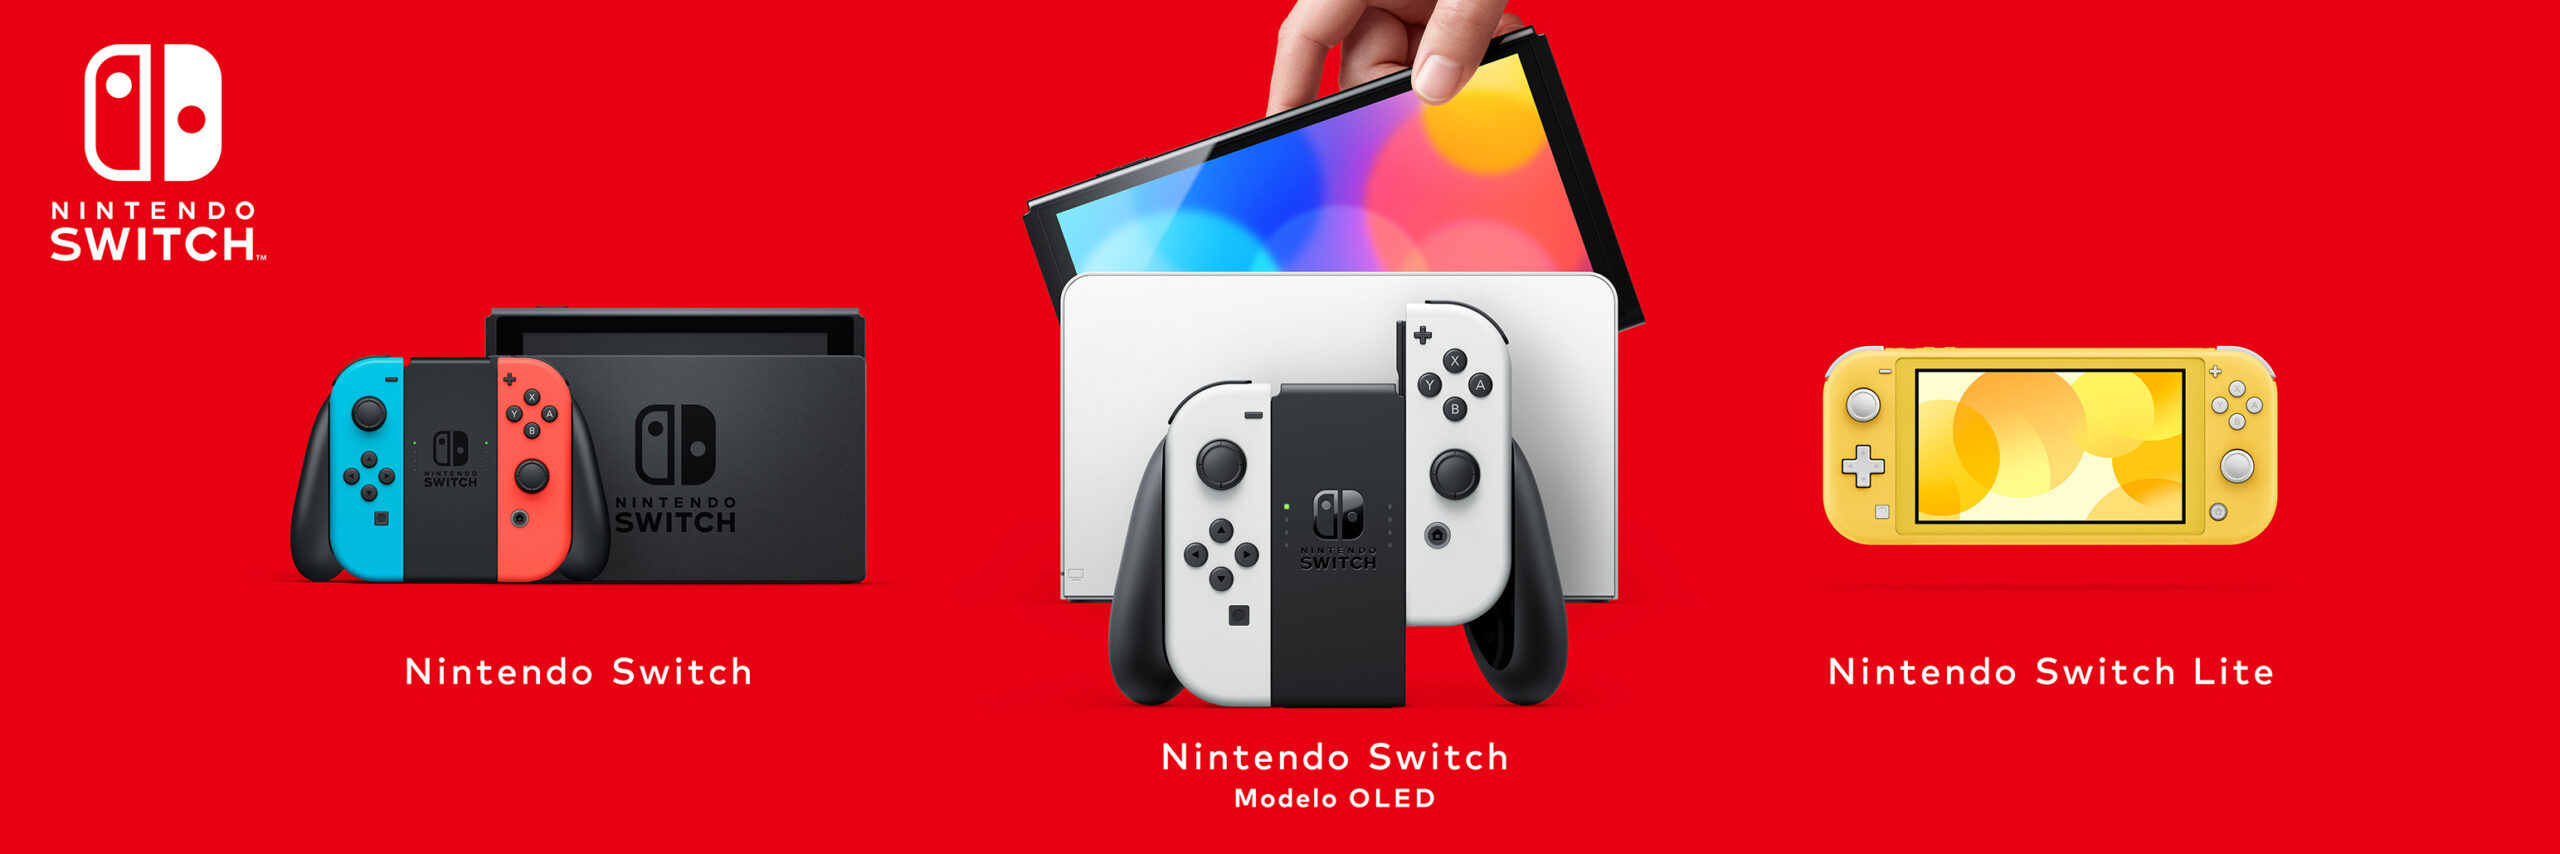 Nintendo Switch supera los 2 millones de unidades vendidas en España y se confirma como la consola más vendida por tres años consecutivos, según datos GfK